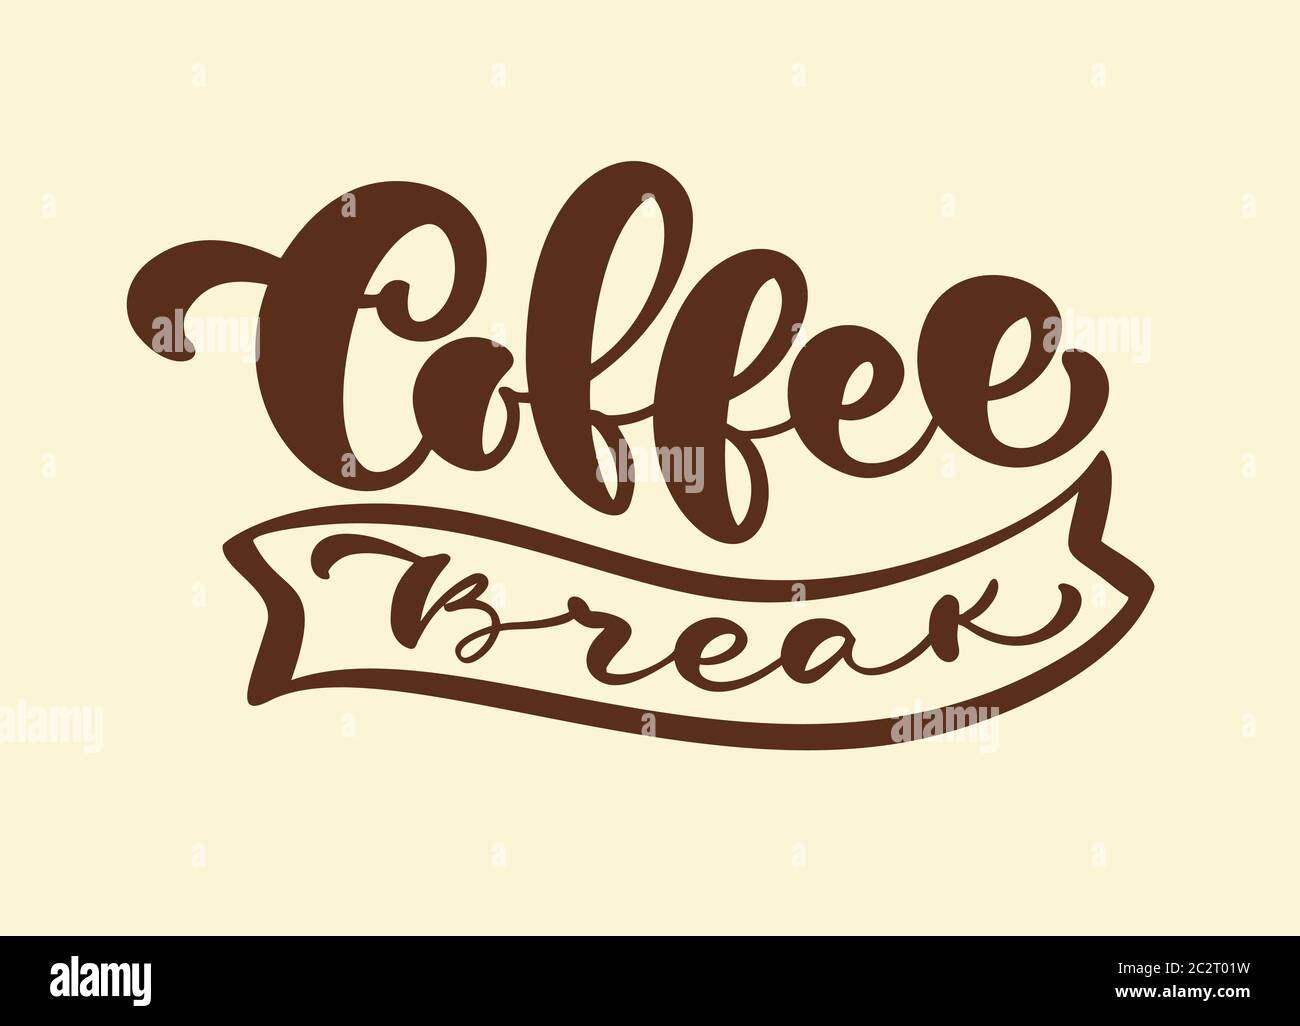 Scritta stilizzata a mano Coffee Break Hipster scritta stilizzata vintage isolata su sfondo marrone. La frase vettoriale sul tema del caffè è Illustrazione Vettoriale